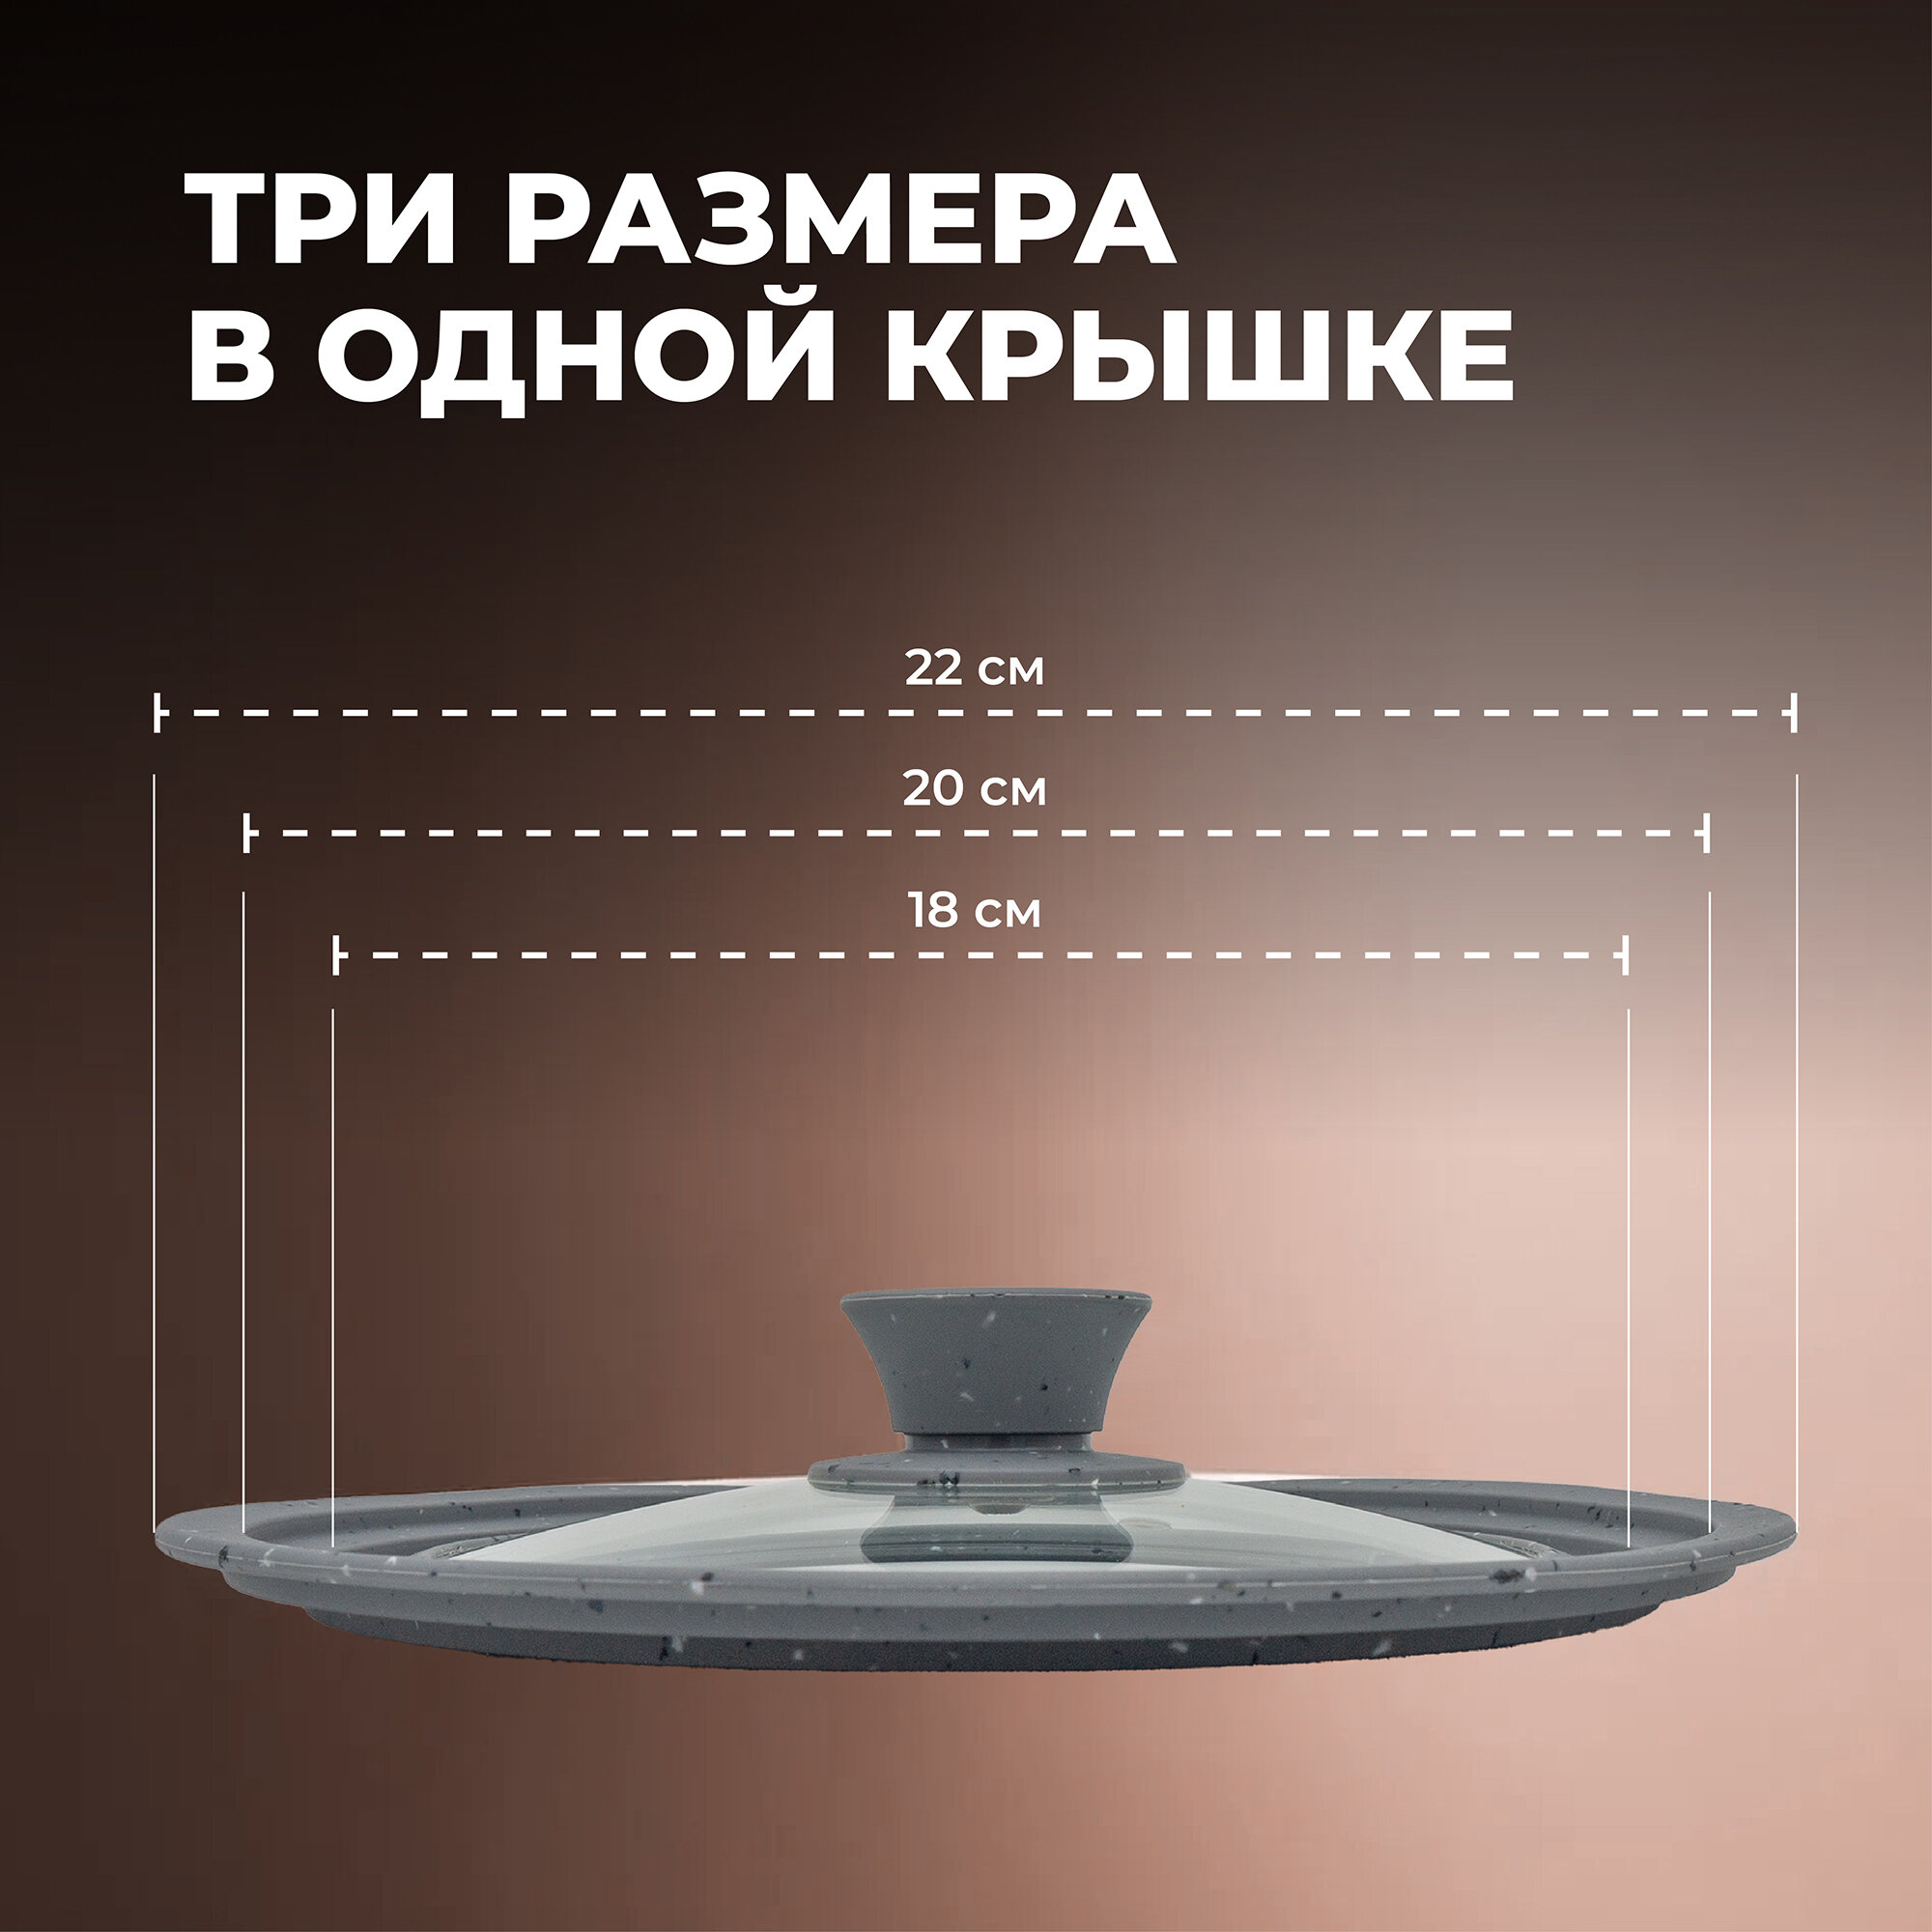 Универсальная крышка для посуды Wellfort из пищевого силикона и стекла, 3 размера в одном: 18/20/22 см.